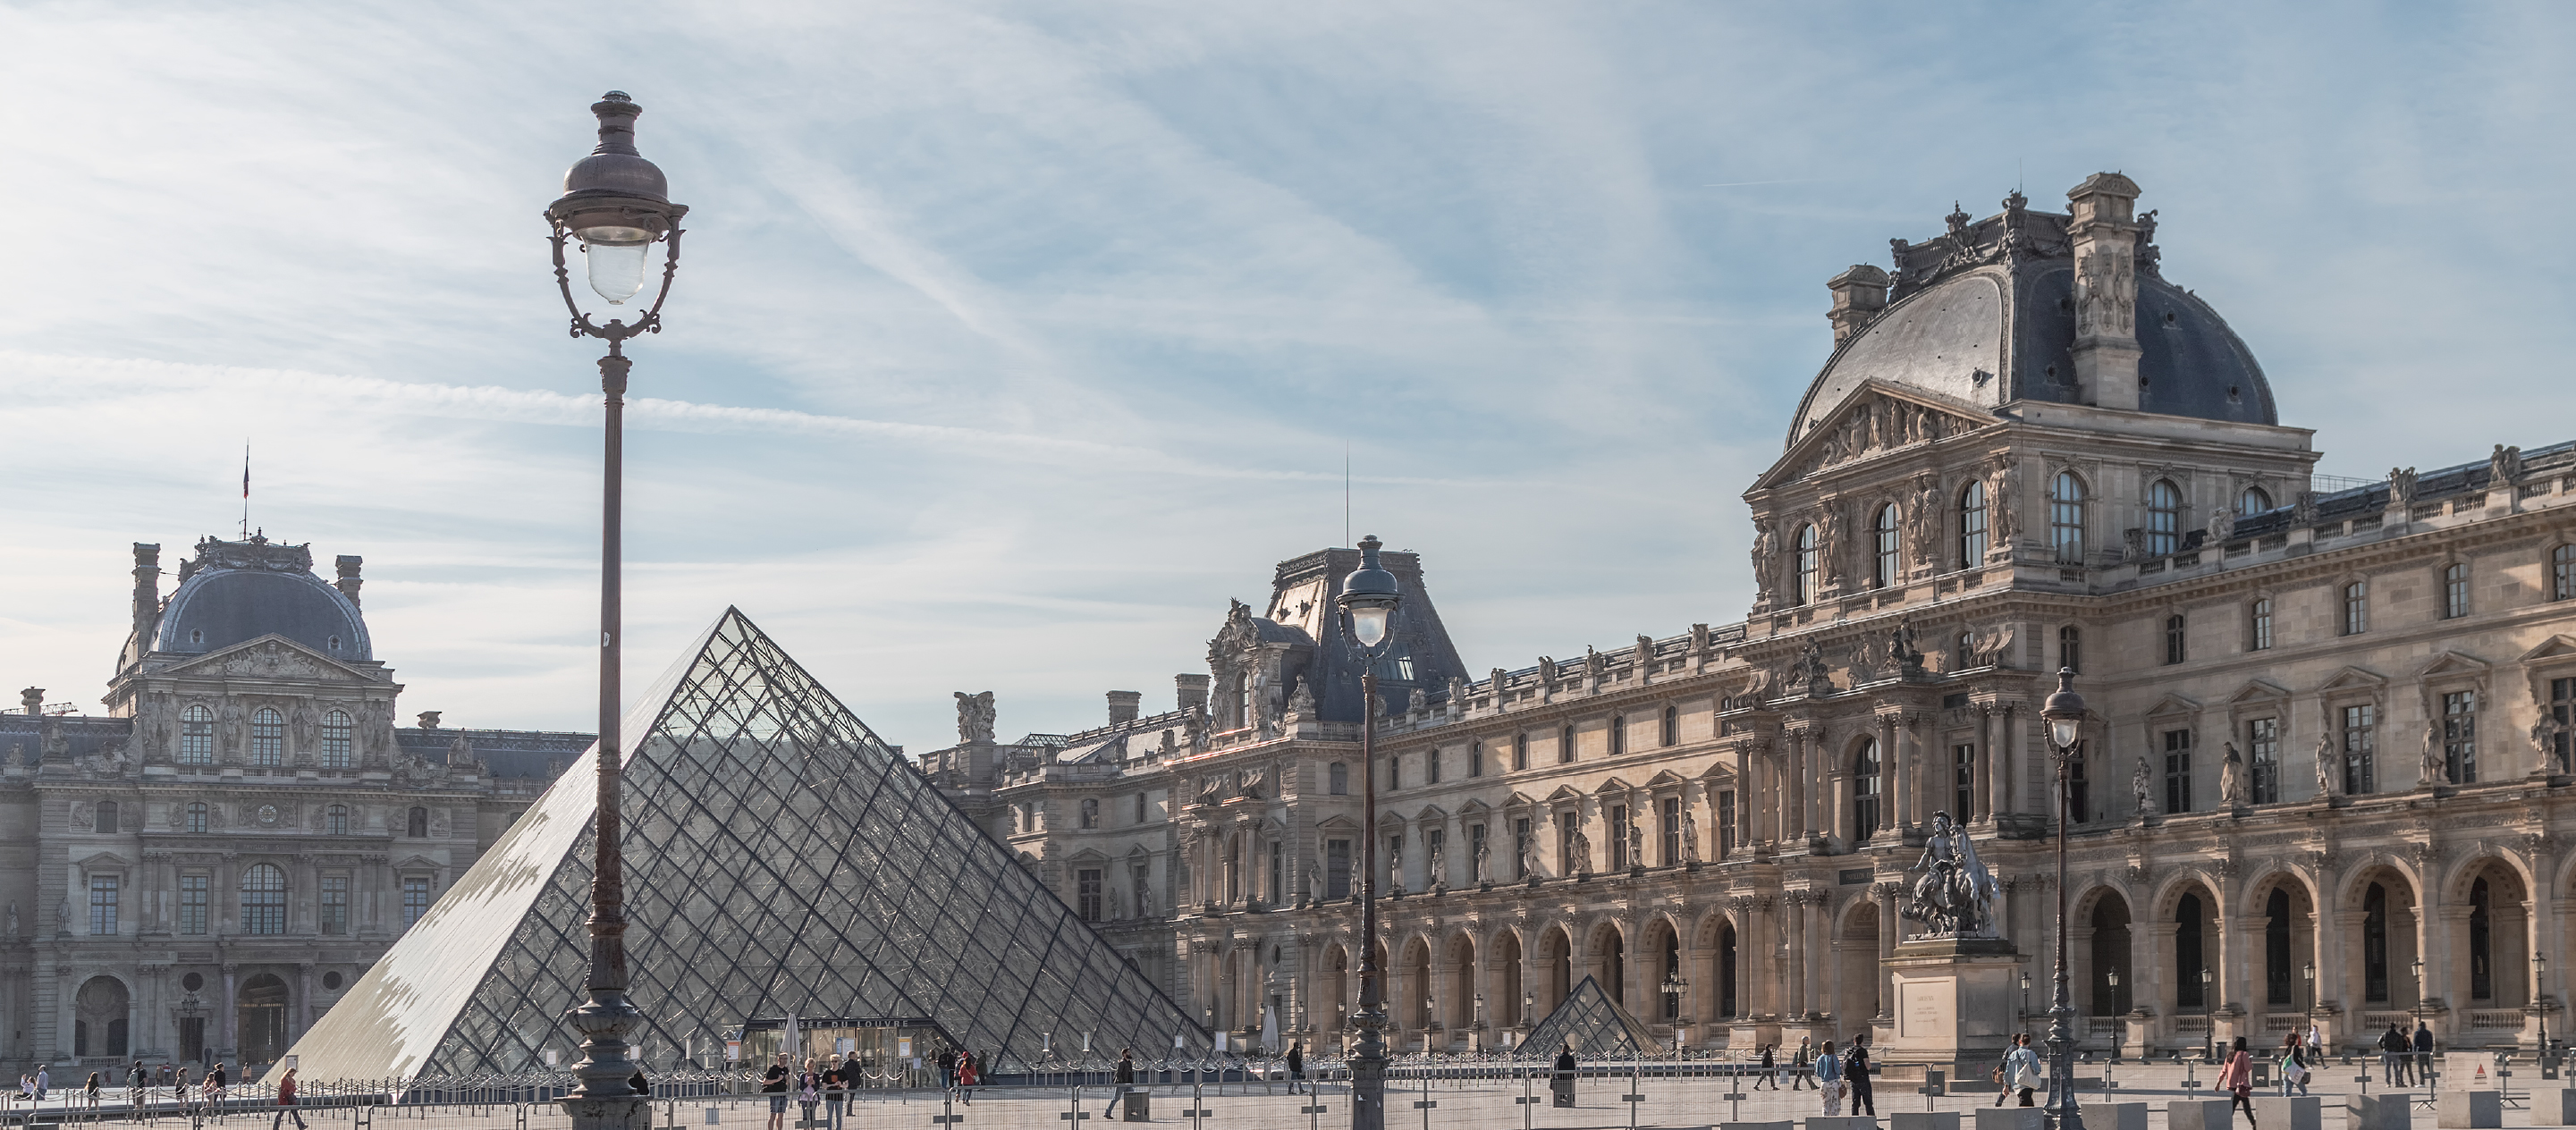 4 คอลเลกชันเด่นของ Louvre ที่ไม่ใช่แค่ผลงาน แต่ยังน่าค้นหาทั้งตัวตึกและสถานที่รอบข้าง